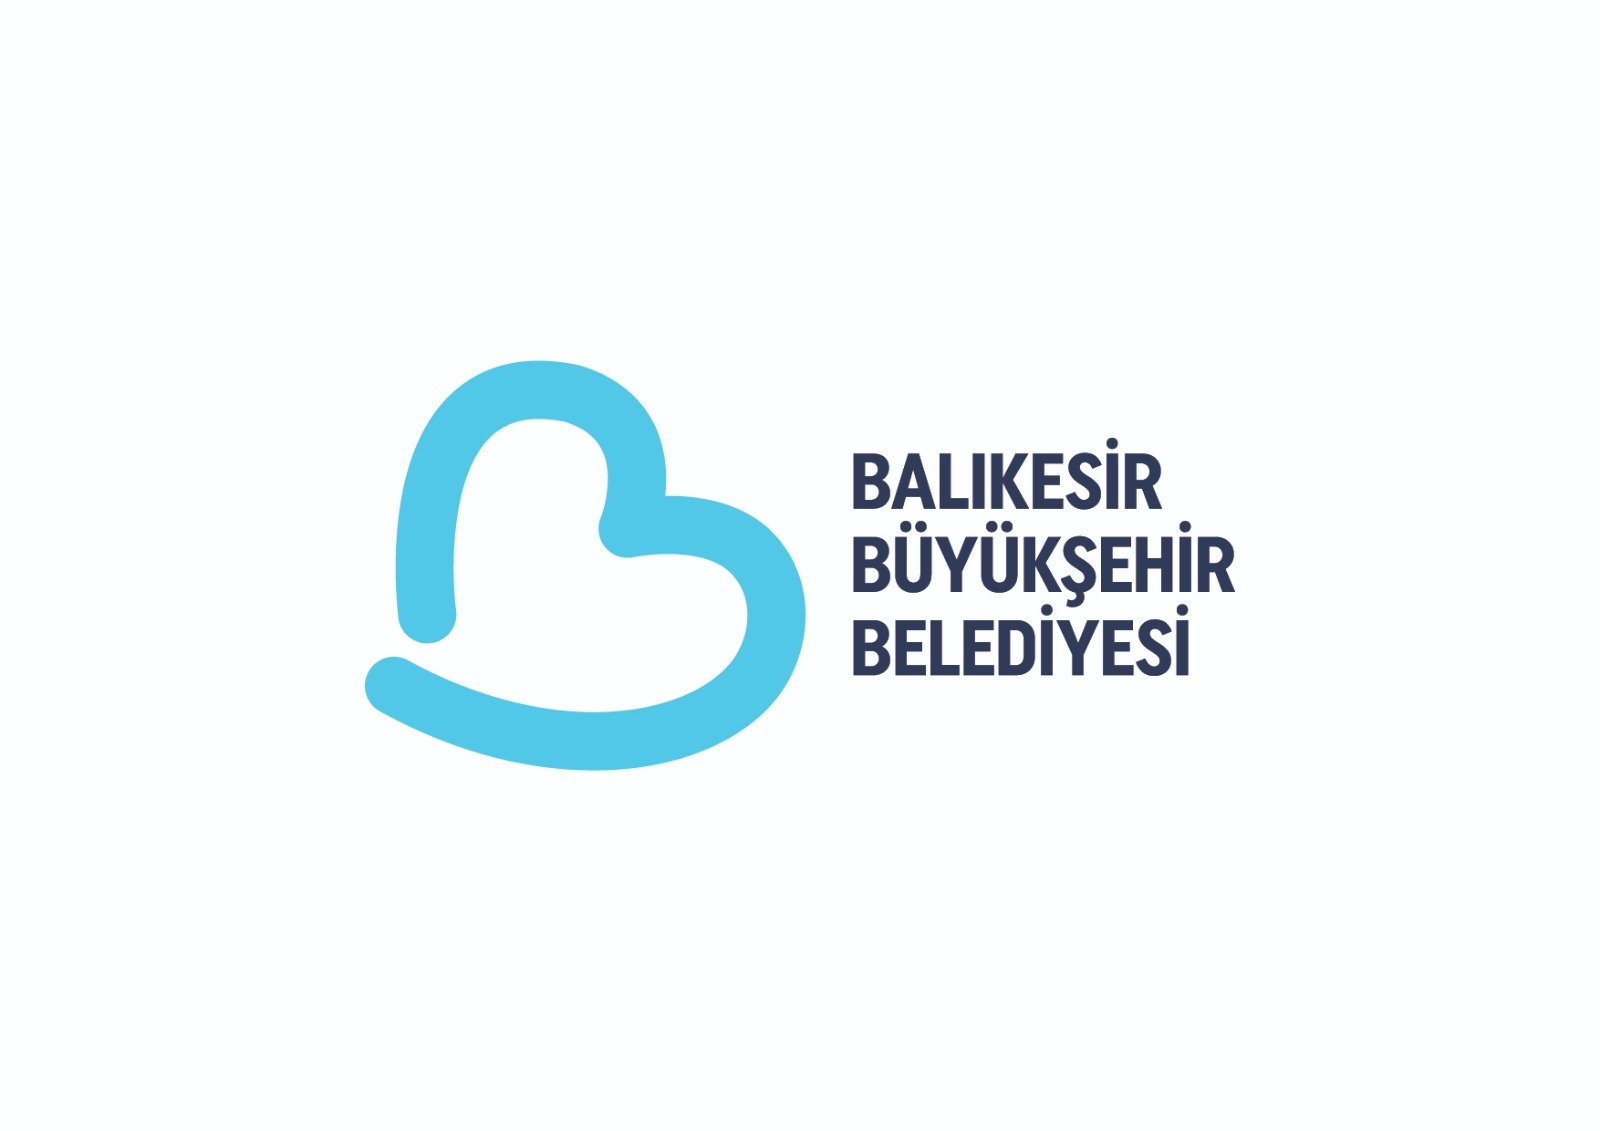 Balıkesir Büyükşehir Belediyesi’nin logosundaki ‘B’ harfi yenilendi